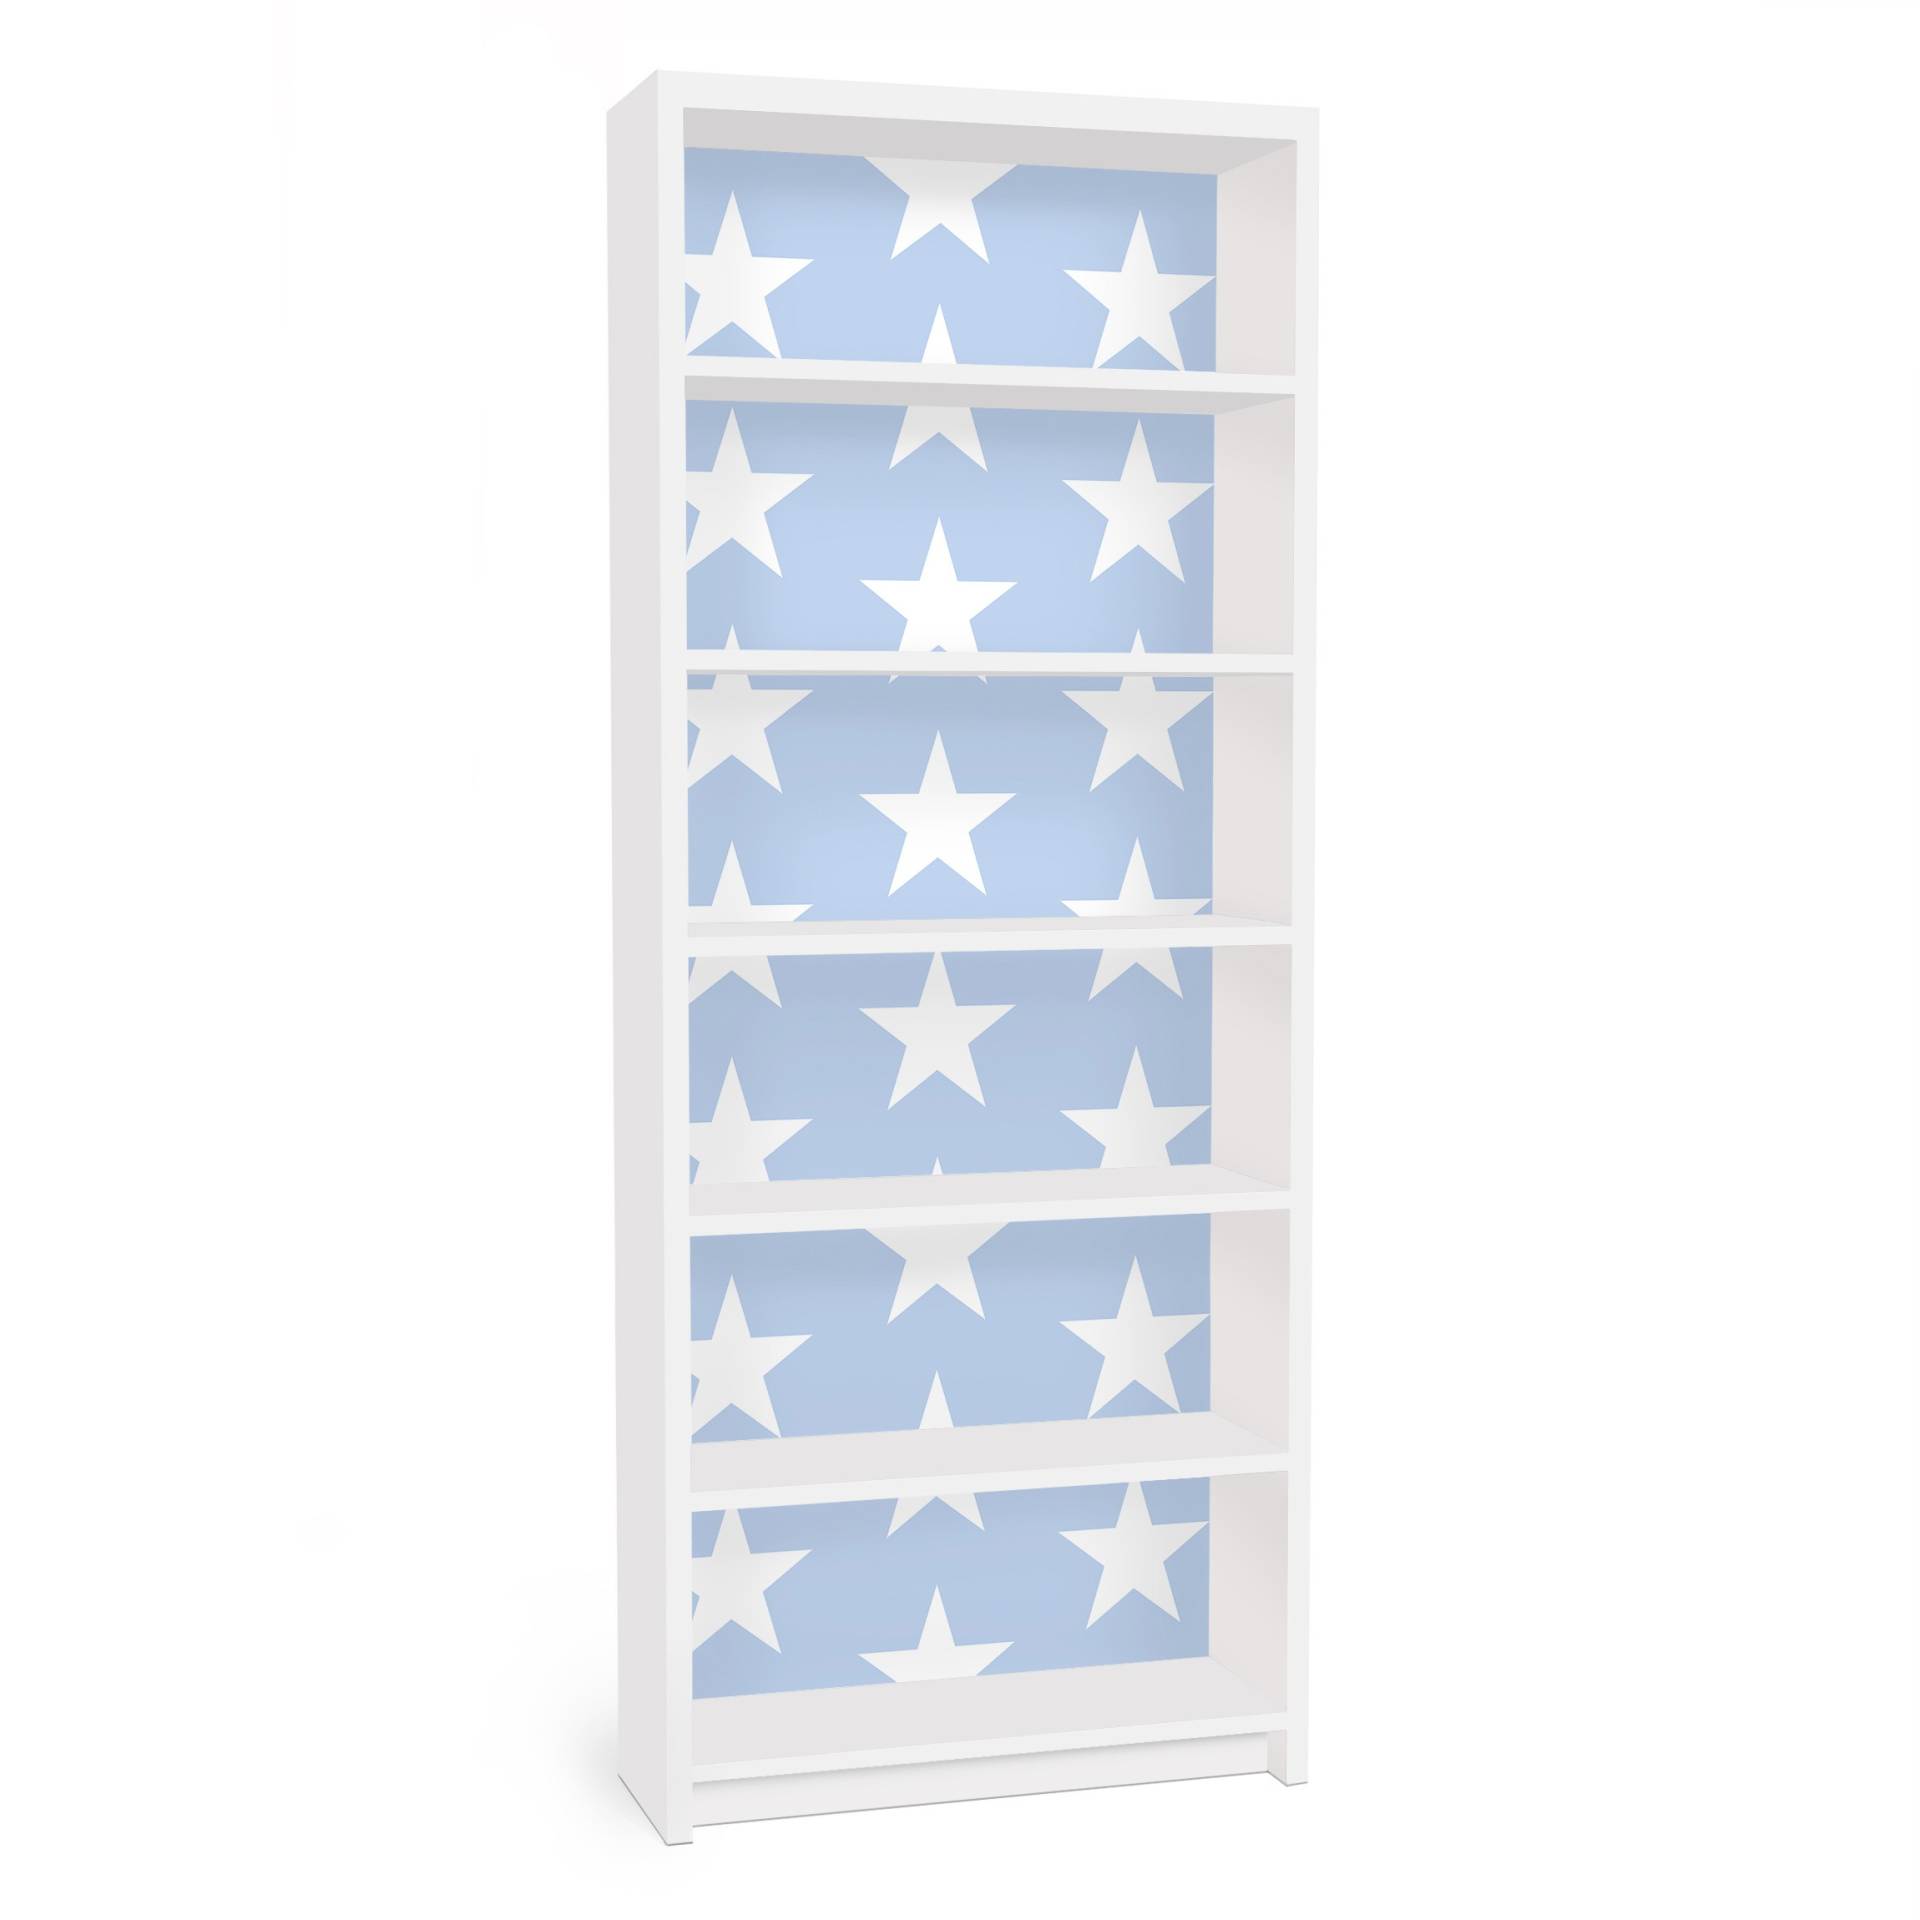 Möbelfolie für IKEA Billy Regal Weiße Sterne auf Blau